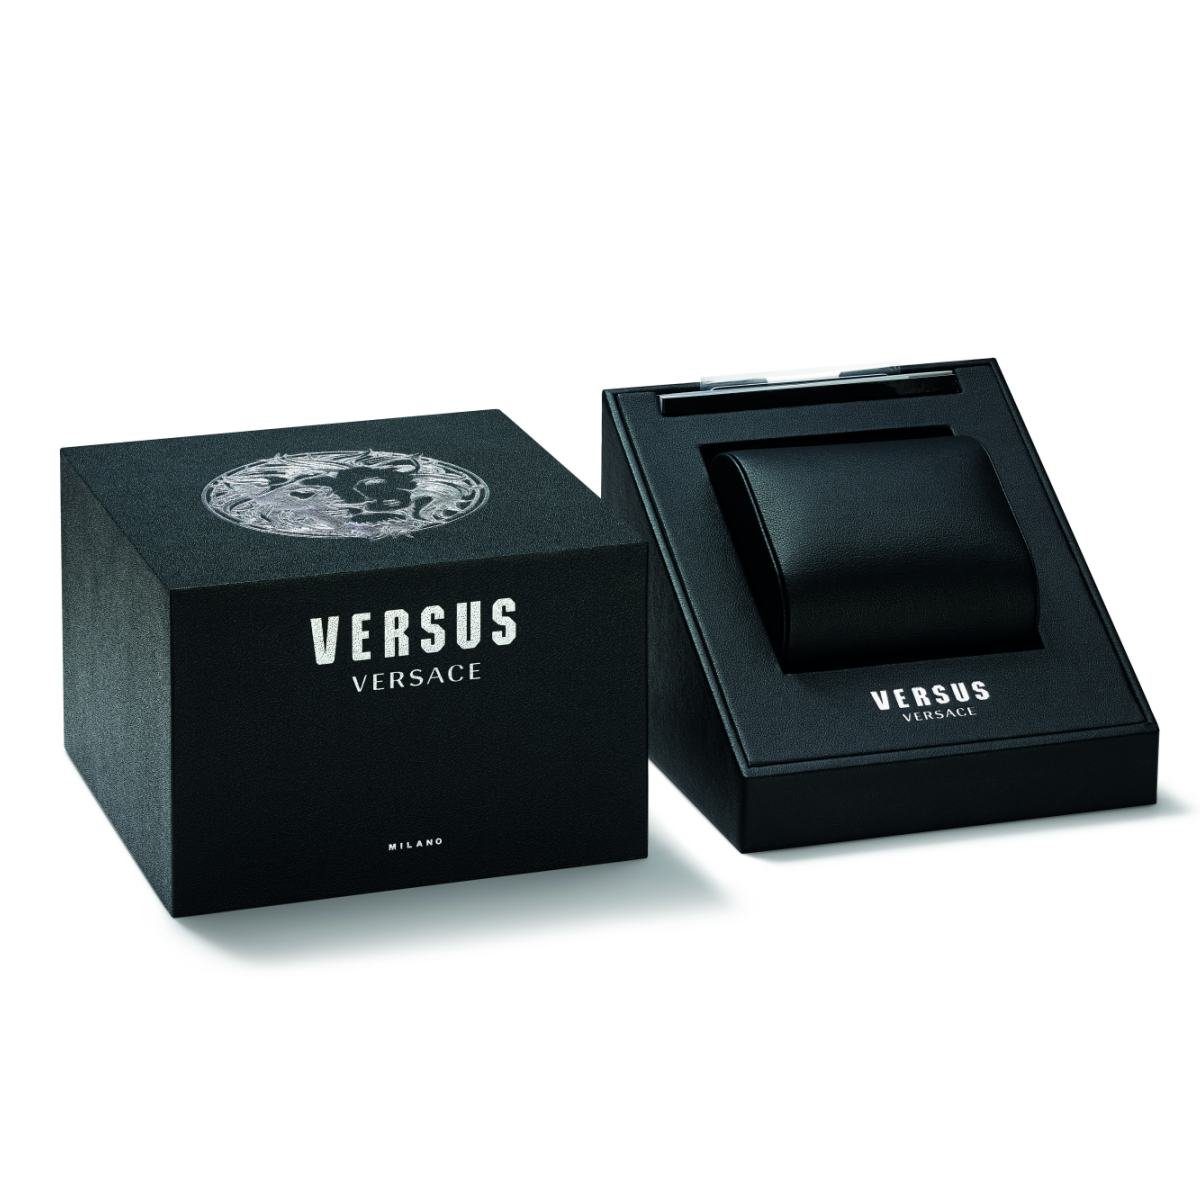 Versus Versace VSP571521 Quarzuhr